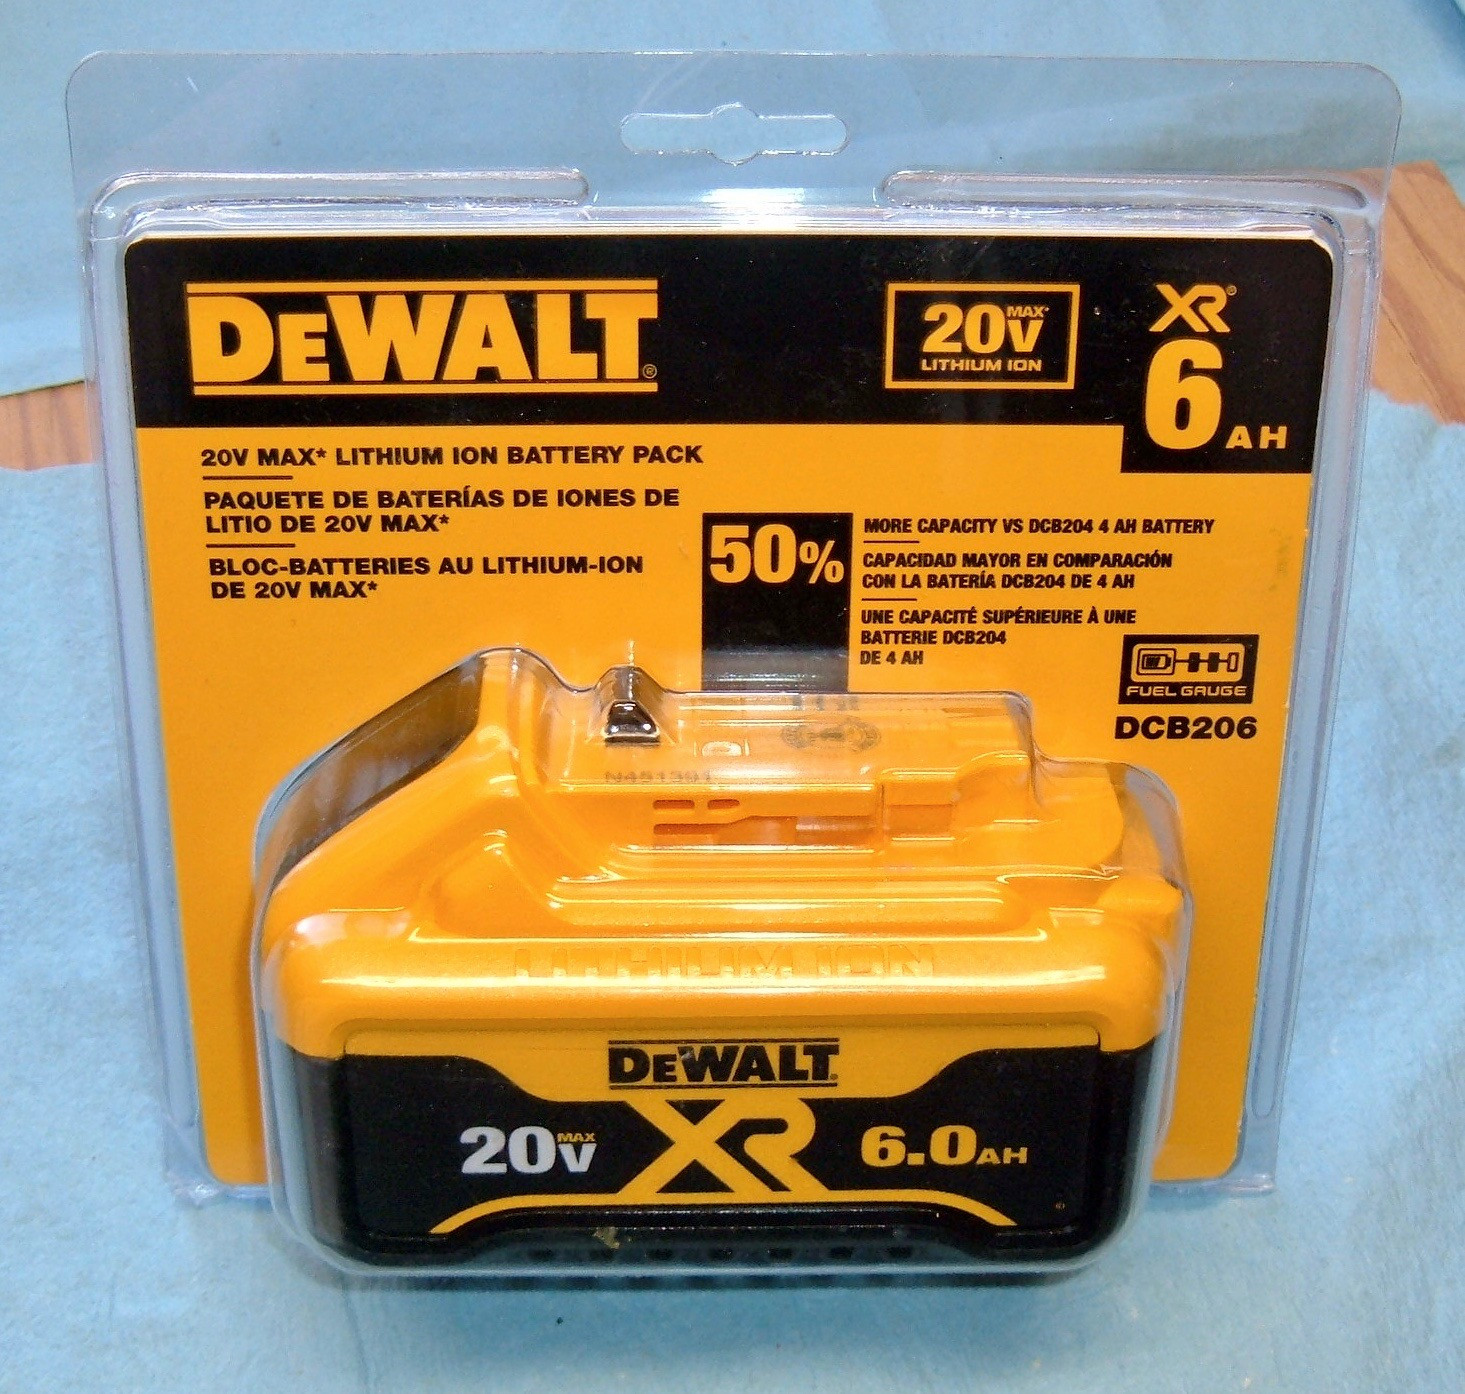 DEWALT DCA1820 20V Battery Adapter - Black/Yellow for sale online